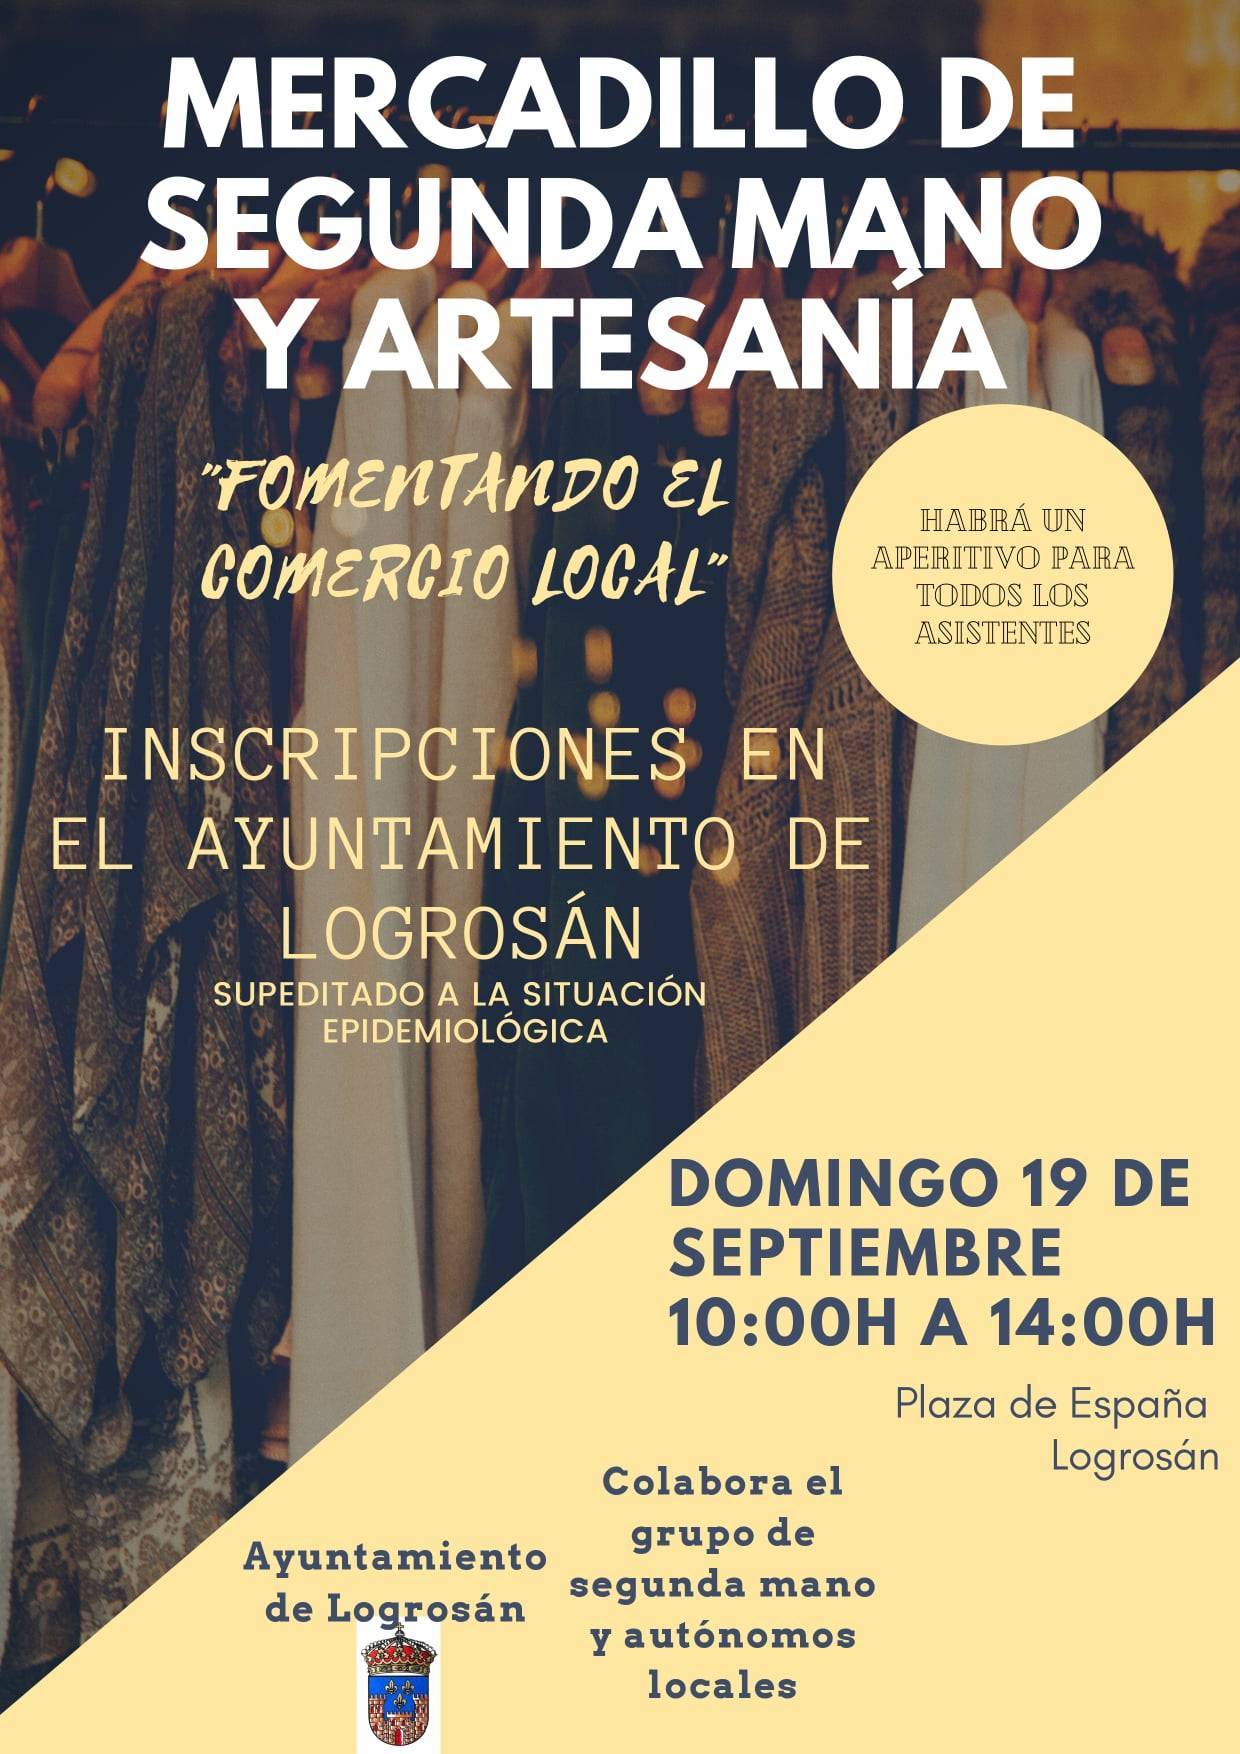 Mercadillo de segunda mano y artesanía (2021) - Logrosán (Cáceres)